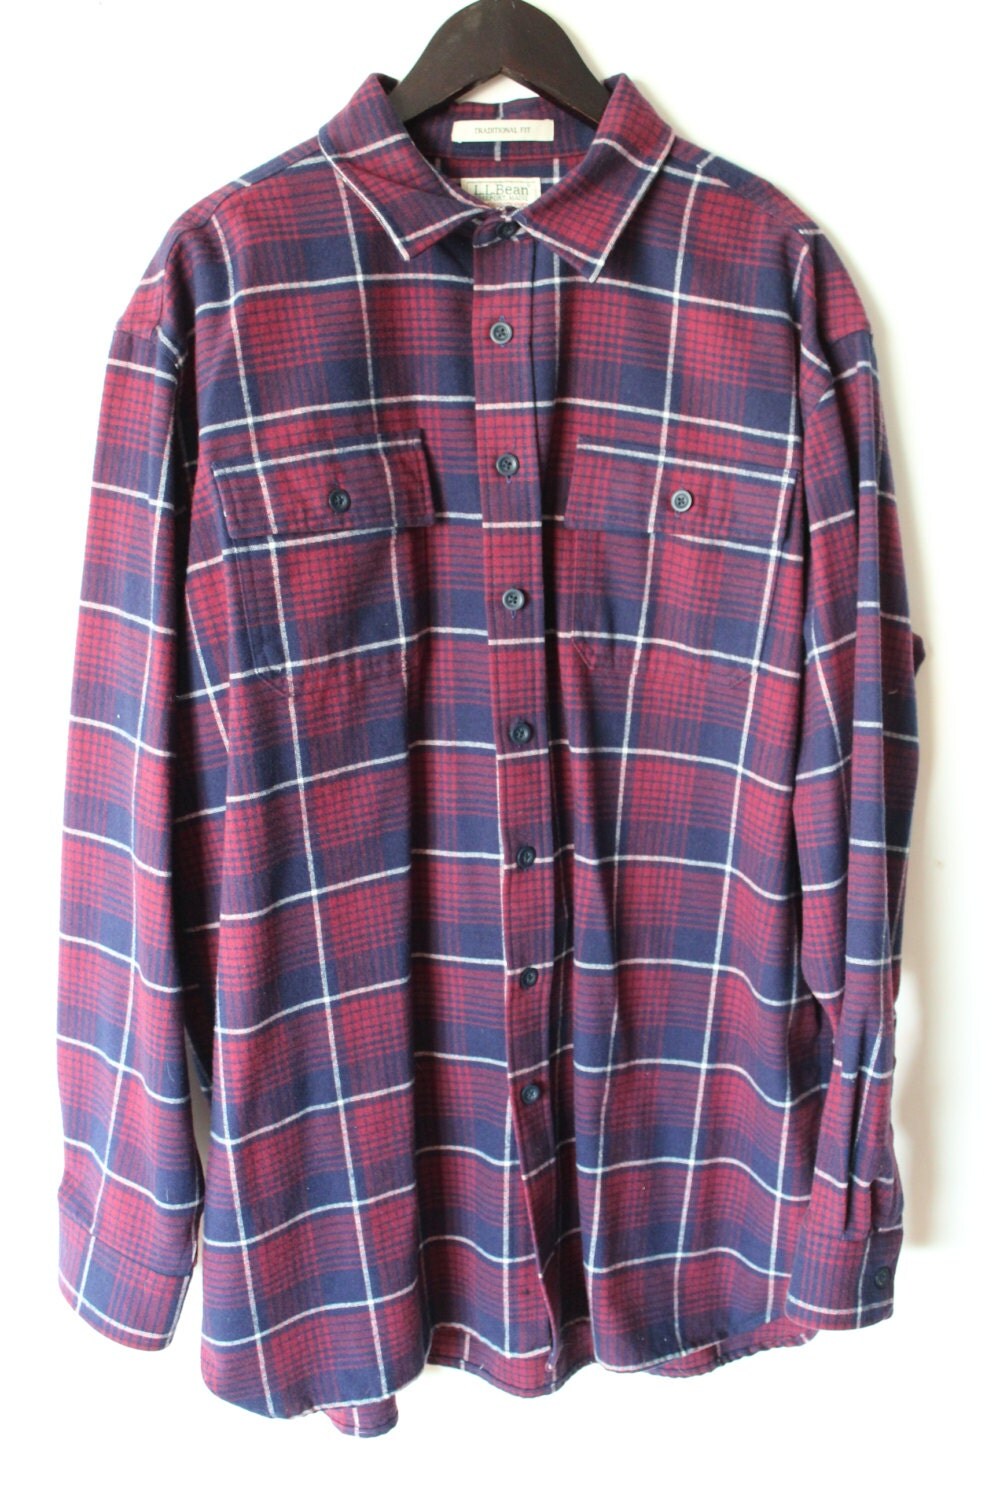 LL Bean Flannel / Men's Plaid Shirt / Maroon & Navy